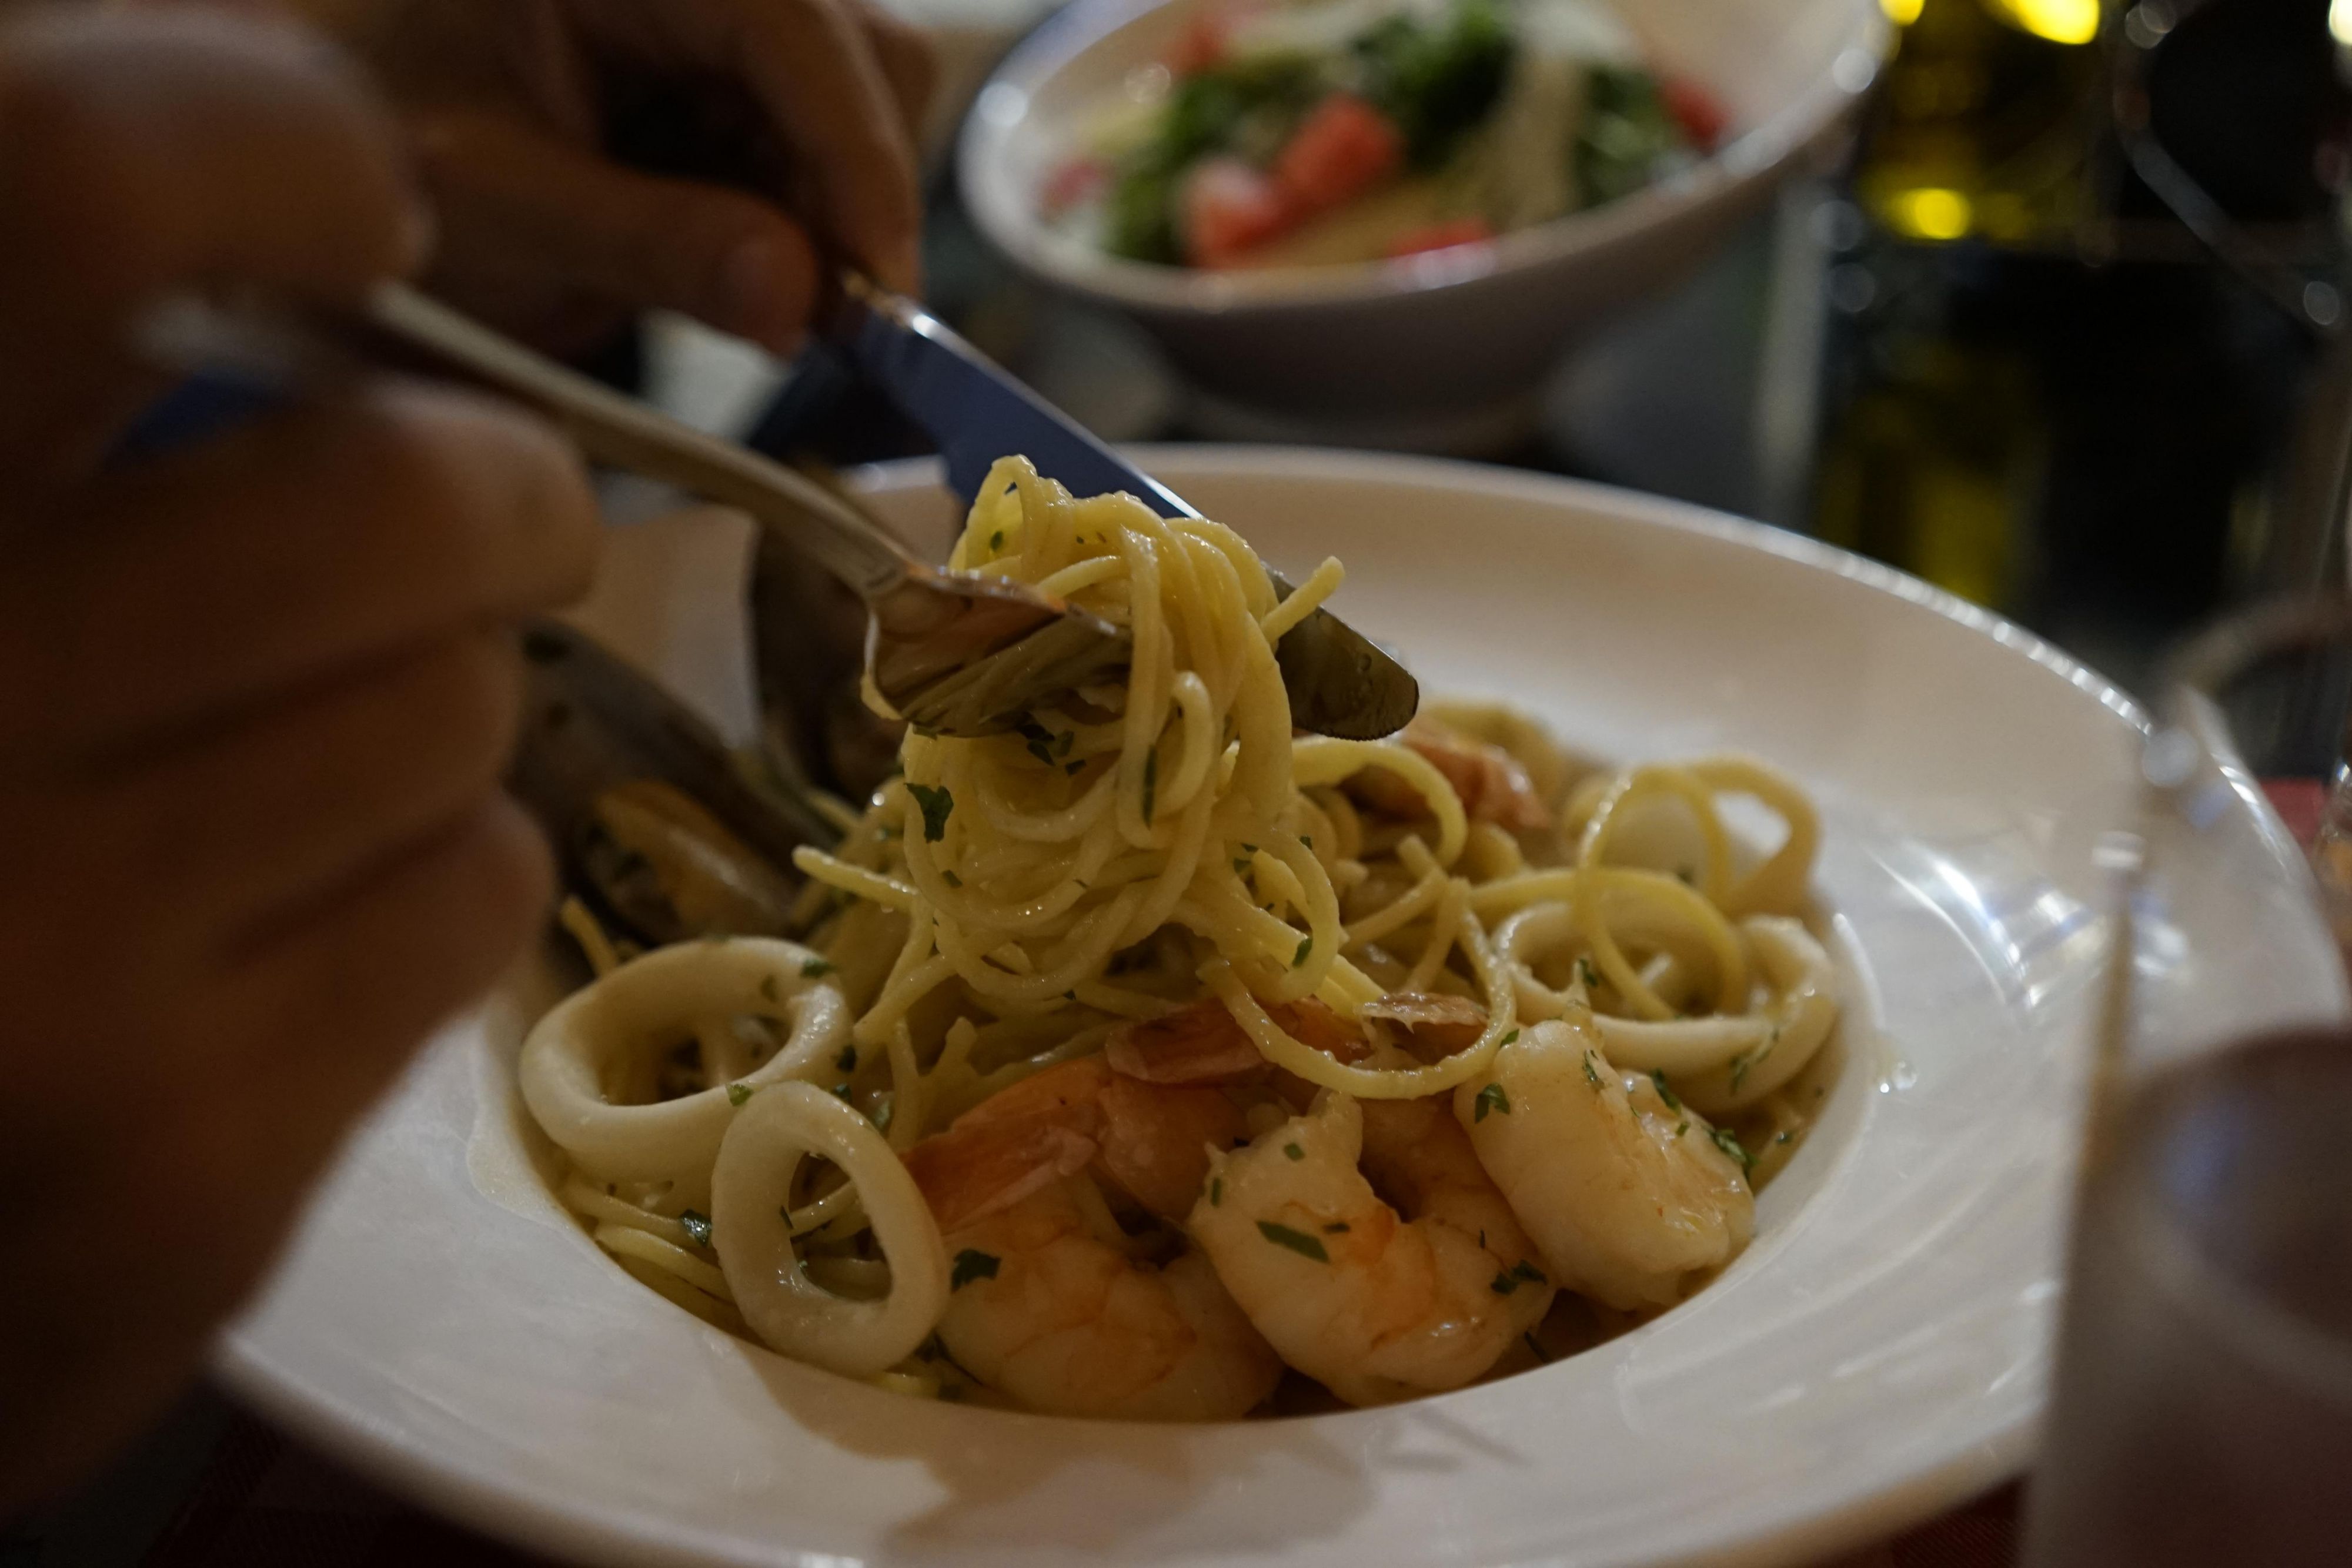 Brioso Italian Restaurant in Dubai - SEAFOOD PASTA FROM THE MENU